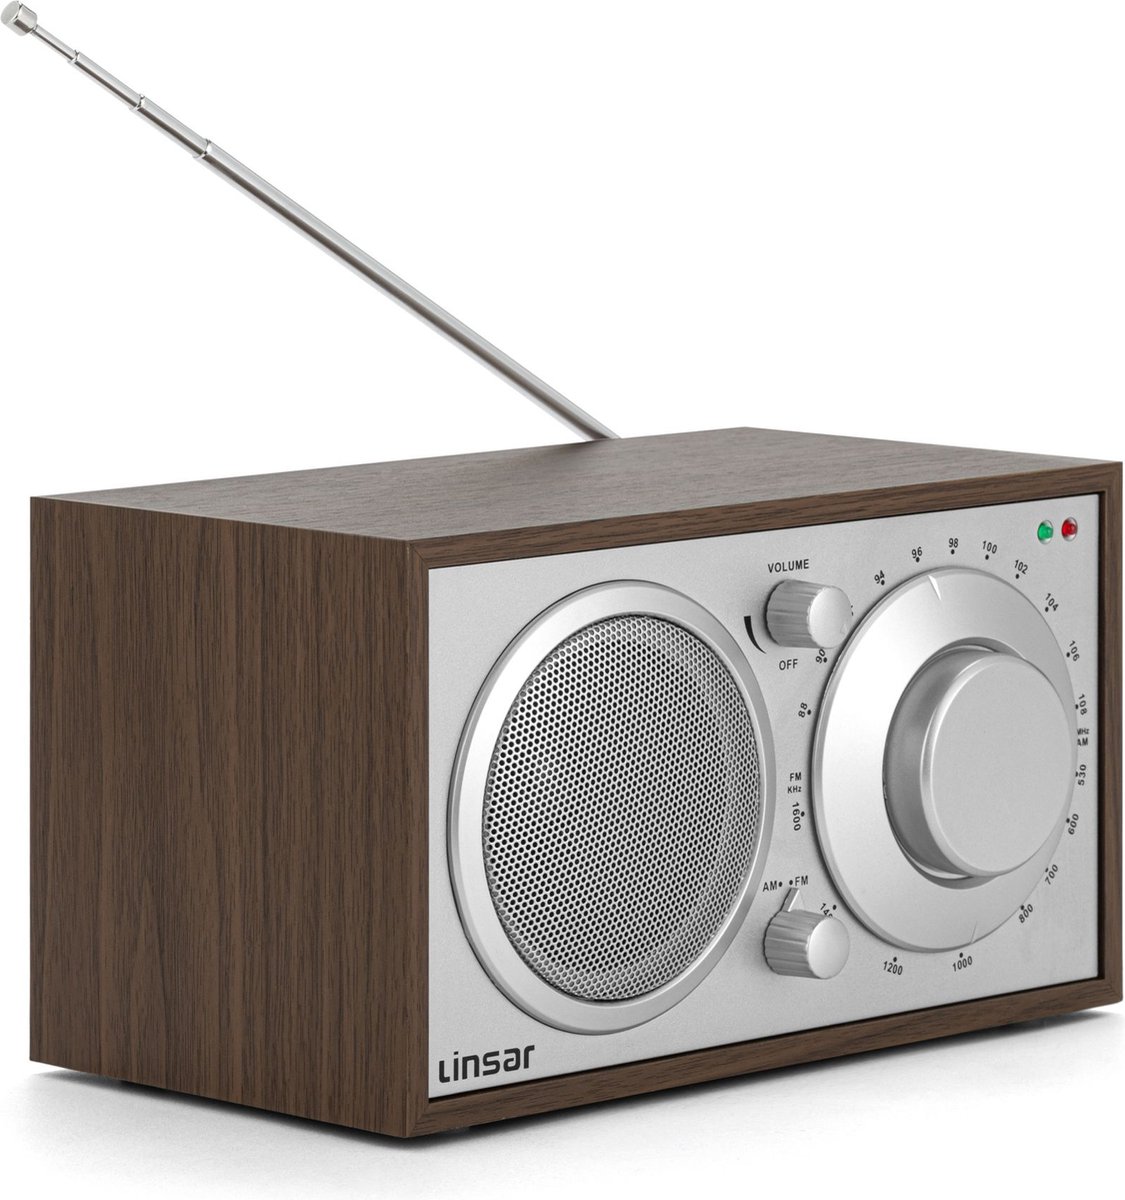 Linsar Nostalgische radio in tijdloos houten design, analoge instelling AM/FM, ingebouwde mono-luidspreker, AUX-IN-functie, hoofdtelefoonfunctie, hoogwaardige bedieningsknoppen, keukenradio